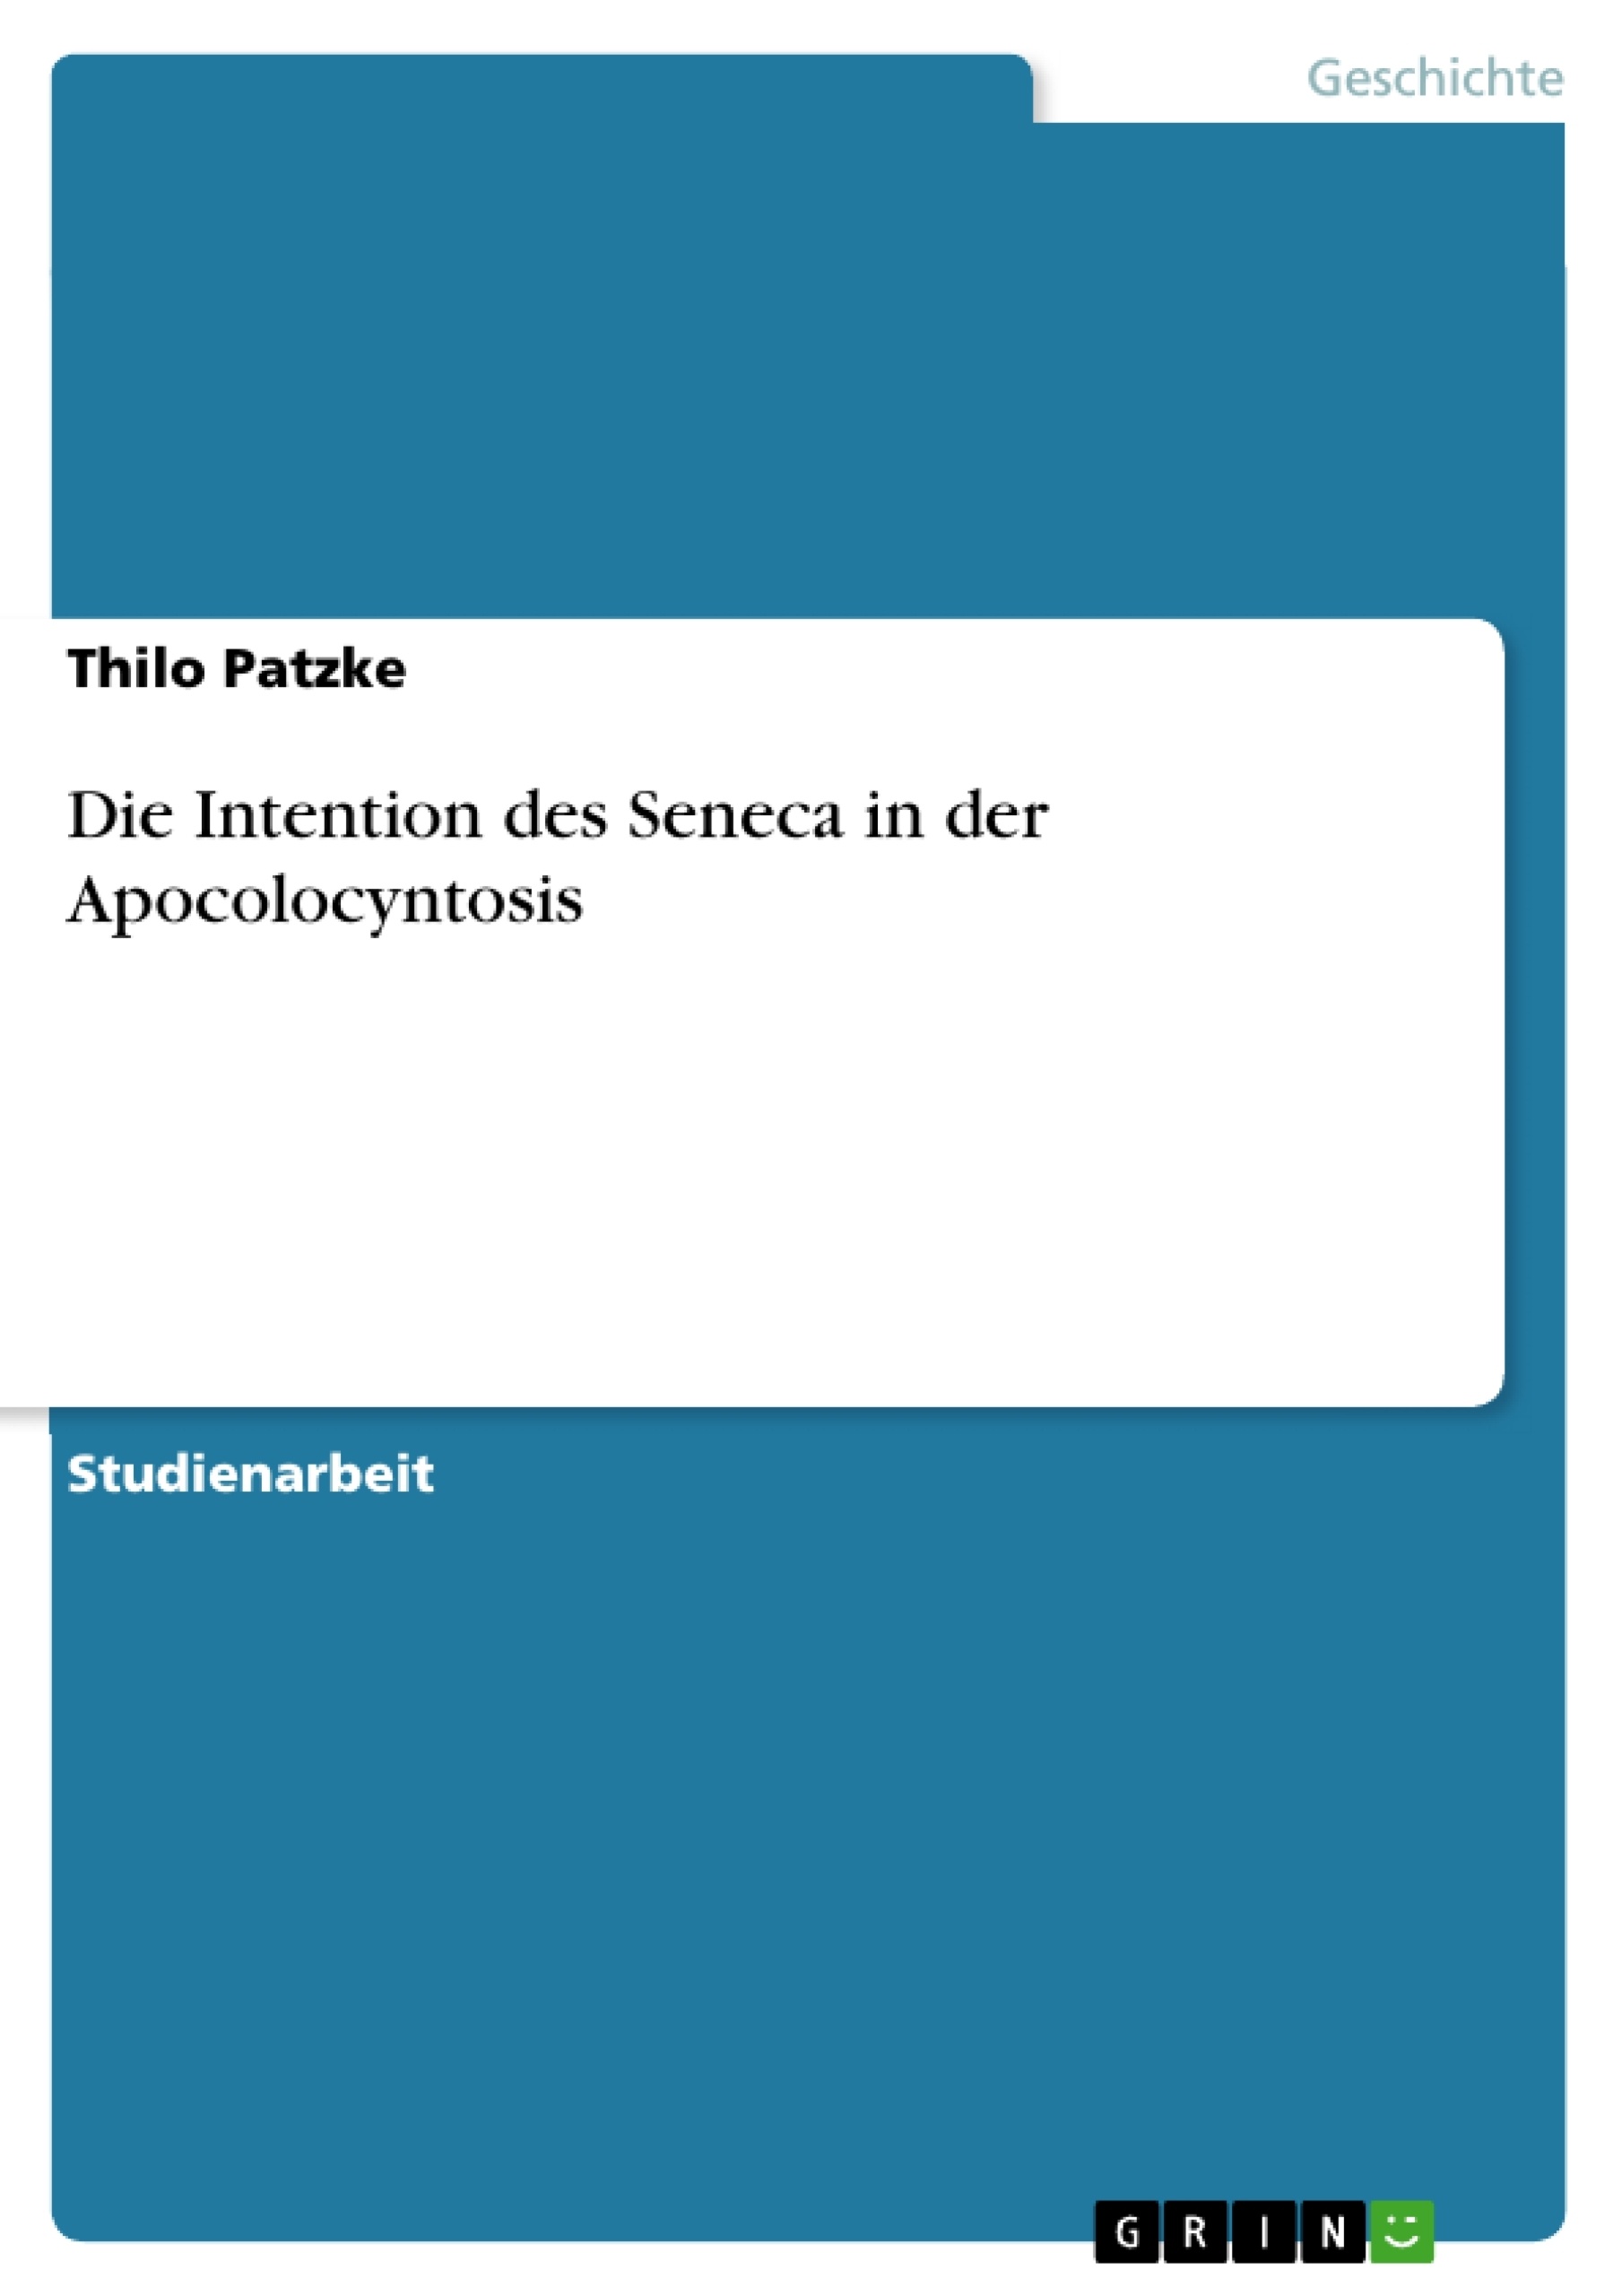 Título: Die Intention des Seneca in der Apocolocyntosis